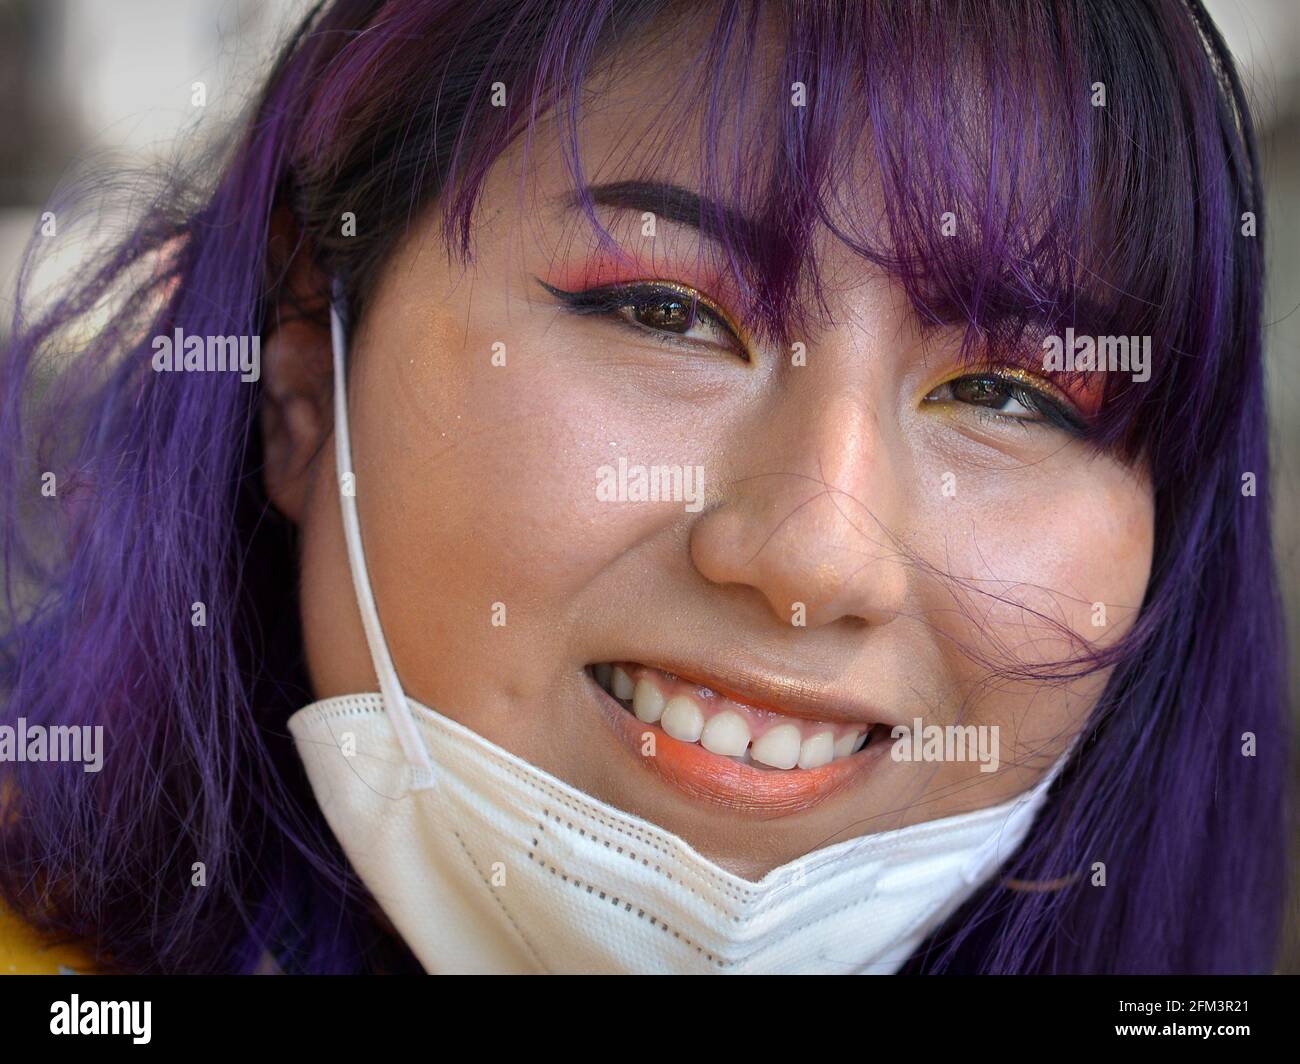 Junge glückliche indigene Südamerikanerin mit aufwändigem Augen-Make-up und blau gefärbtem Haar zieht ihre KN95-Gesichtsmaske herunter und lächelt für die Kamera. Stockfoto